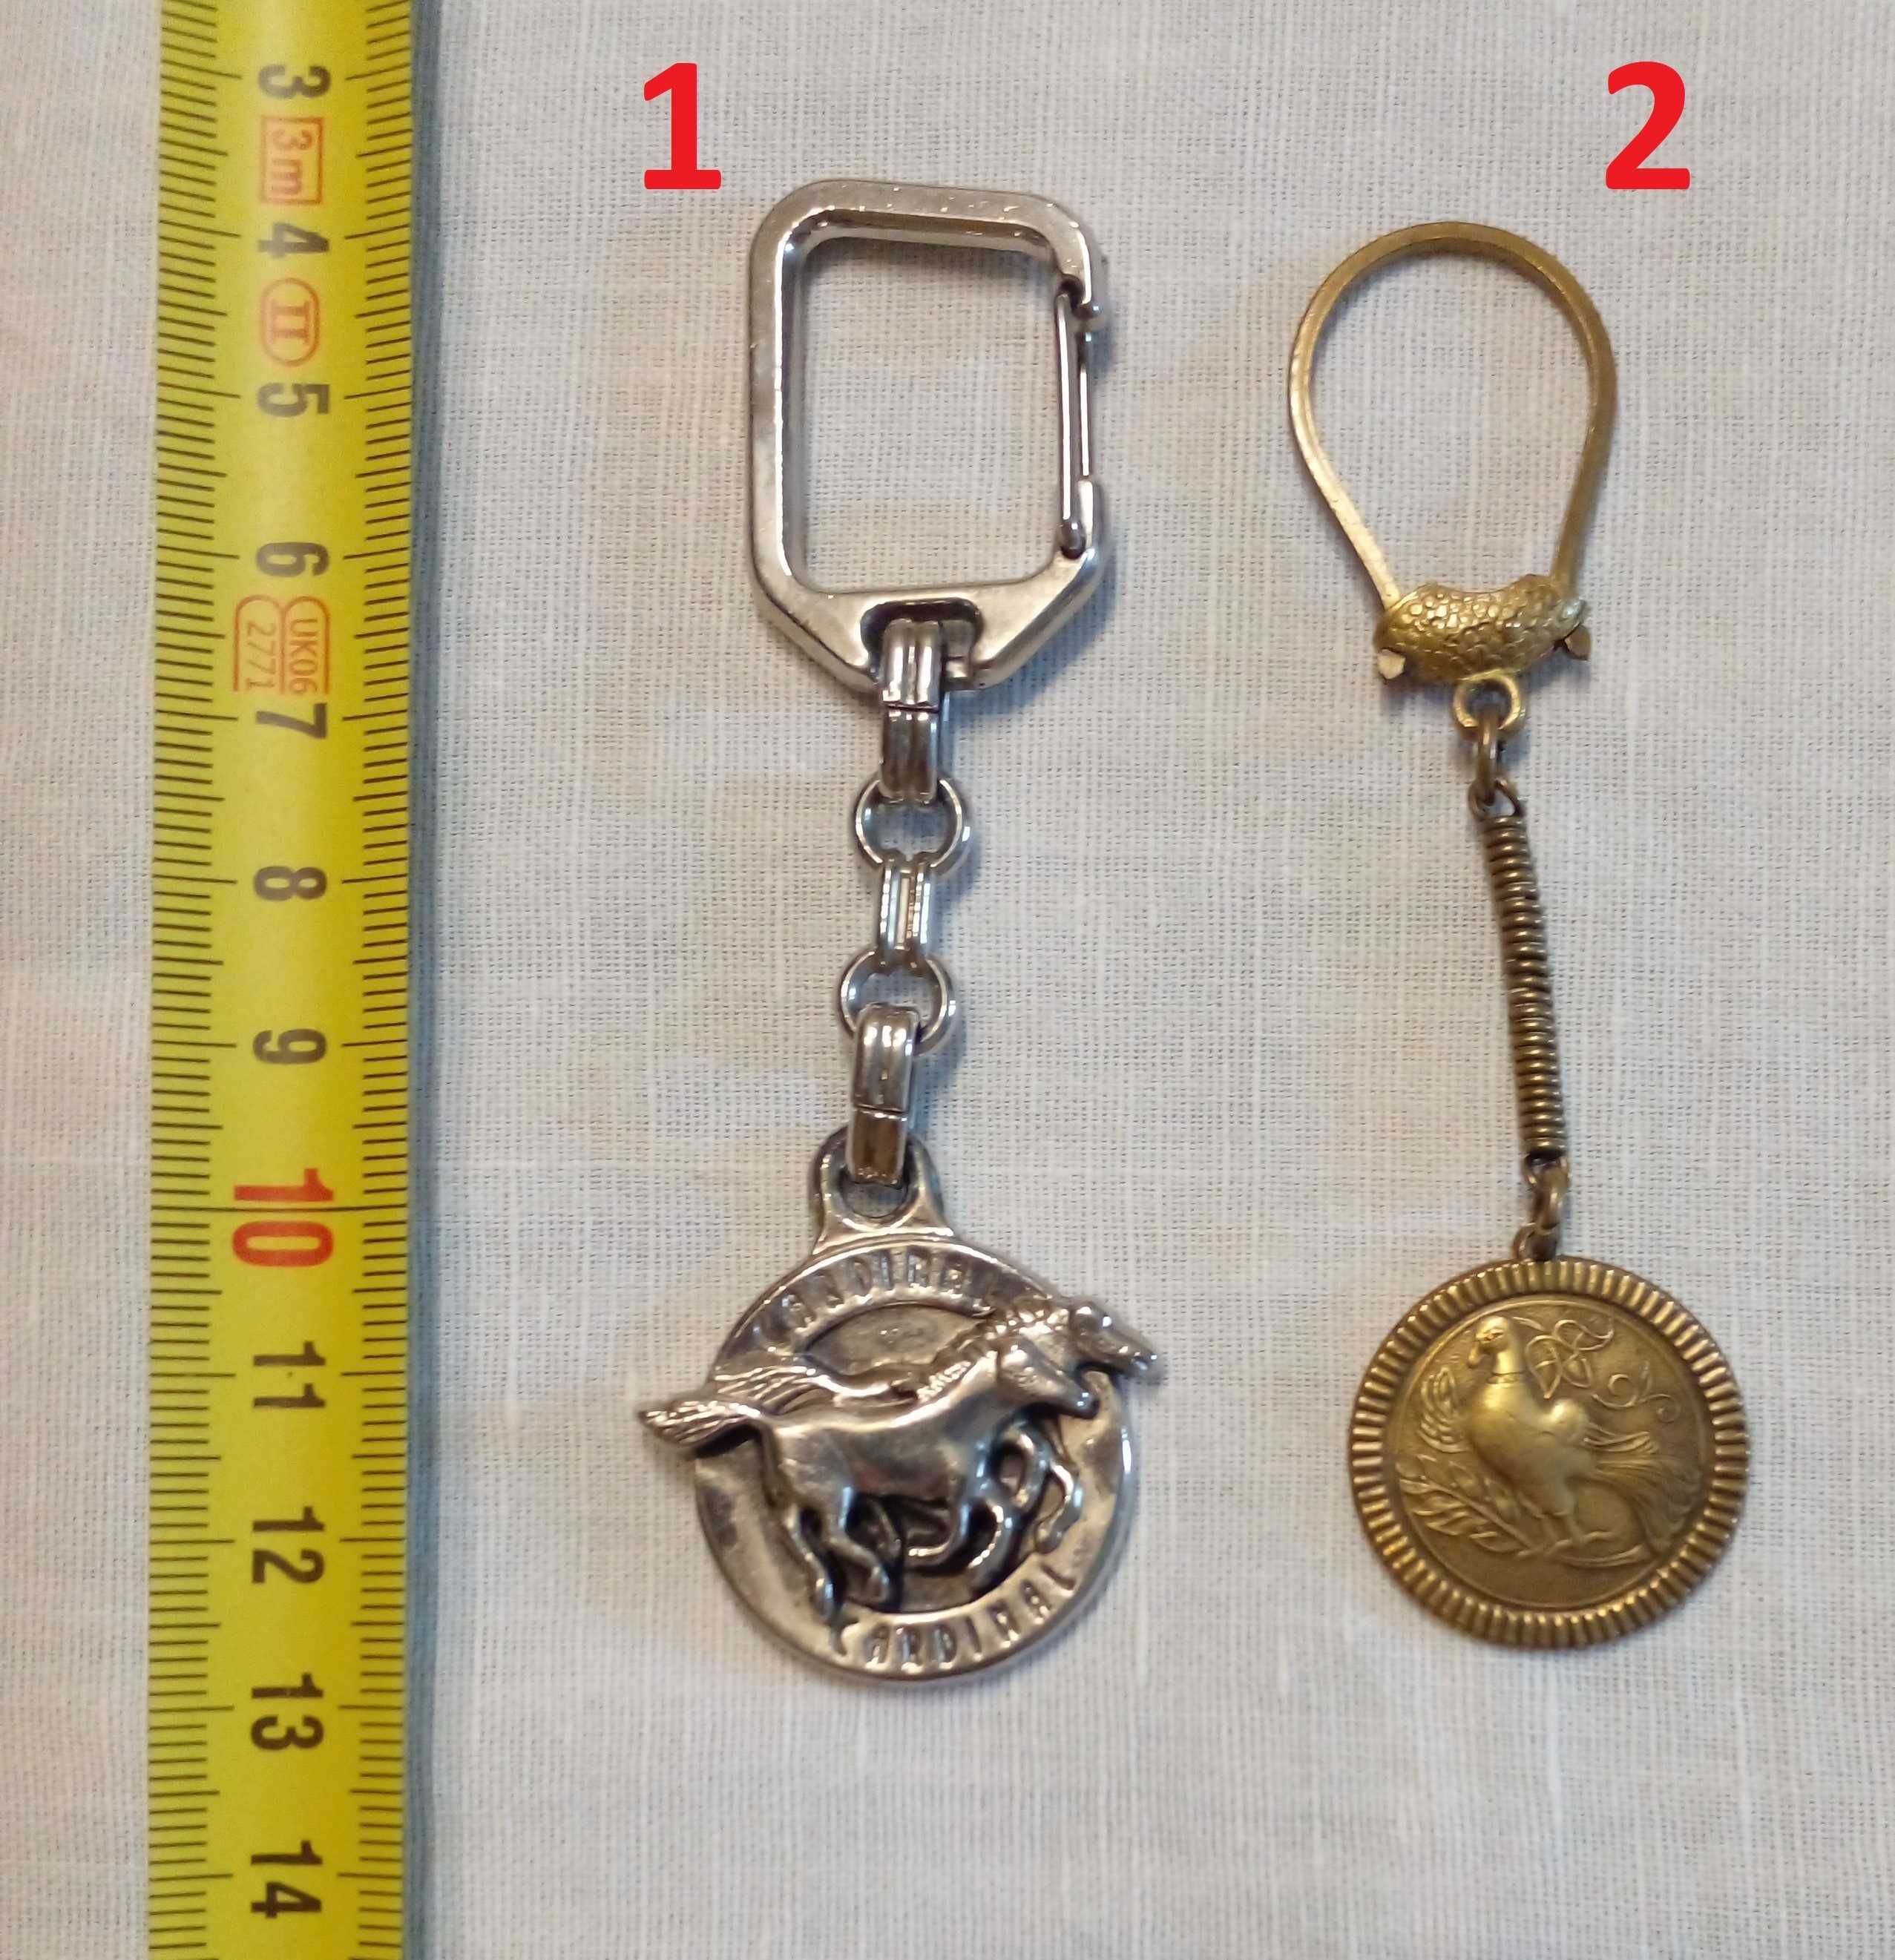 Брелок, подвеска, сувенир, кулон, медальон (в т.ч. времен СССР) - 9 шт